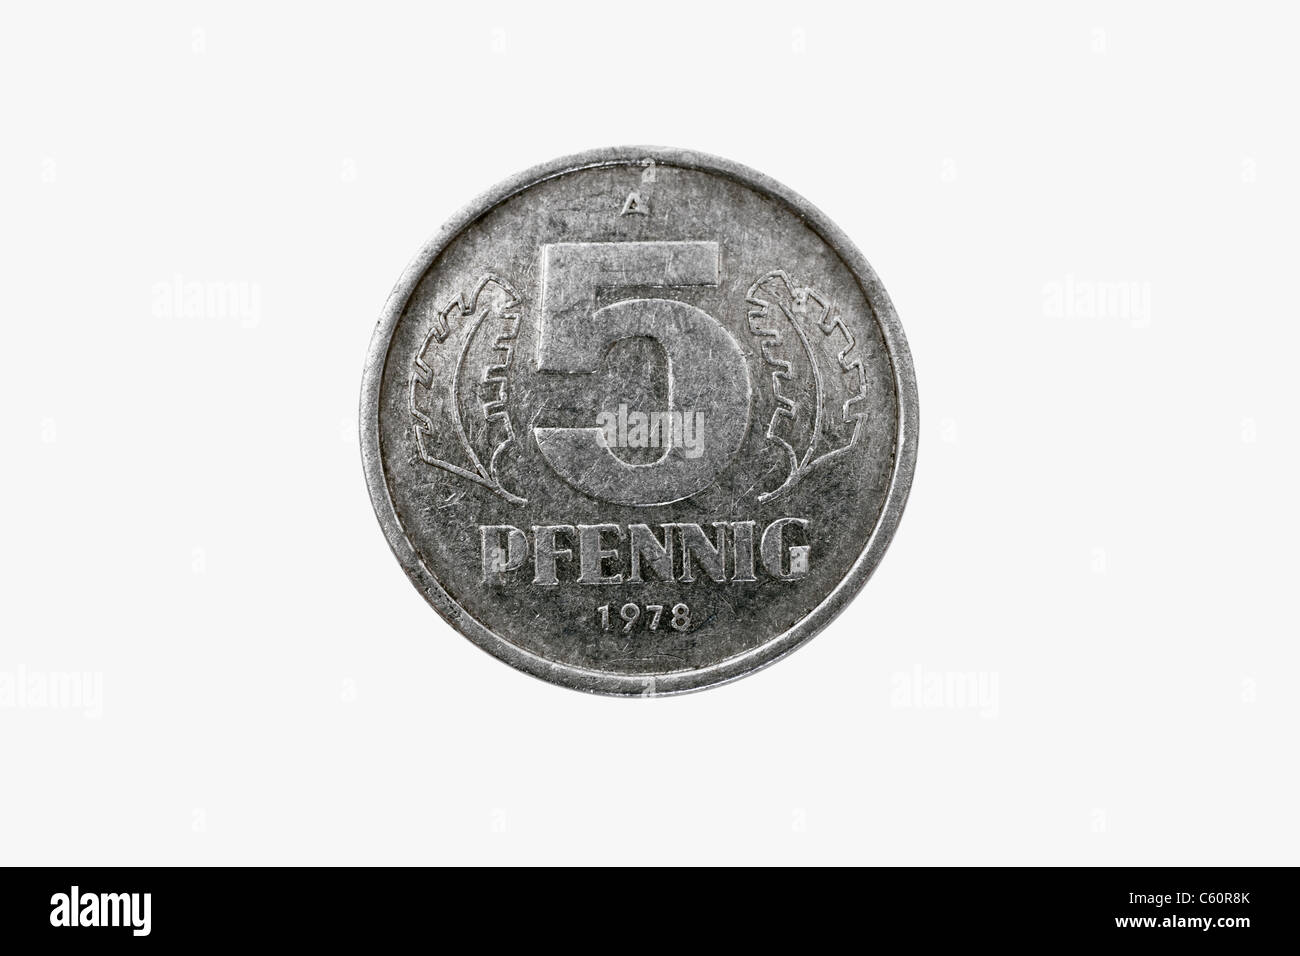 Detailansicht Einer 5 Pfennig Münze aus der DDR aus Dem Jahr 1978 | Detail-Foto einer 5 Pfennig-Münze der DDR aus dem Jahr 1978 Stockfoto